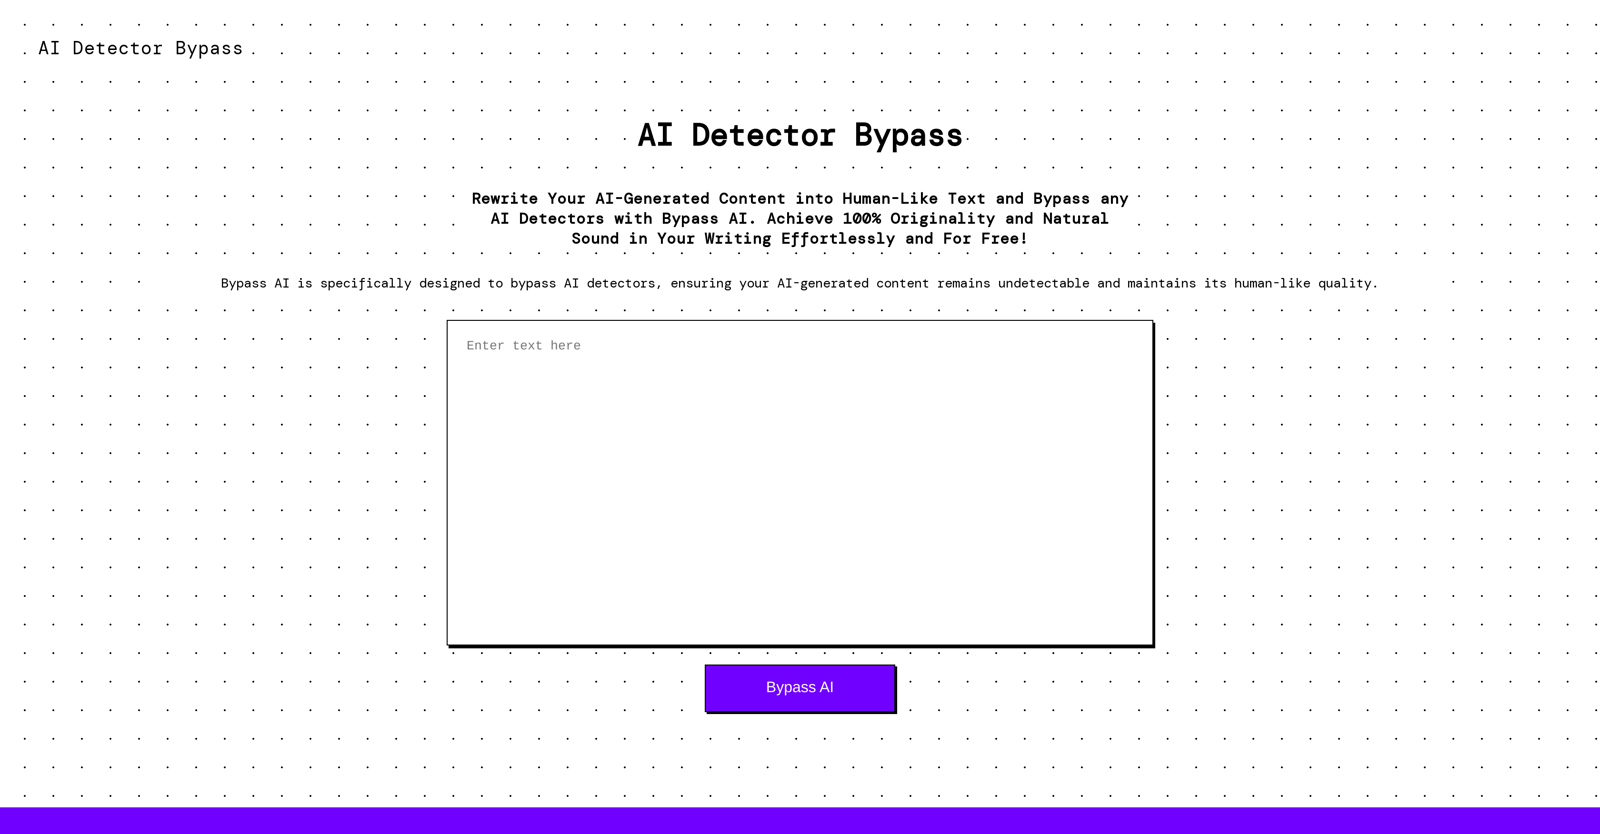 AI Detector Bypass website